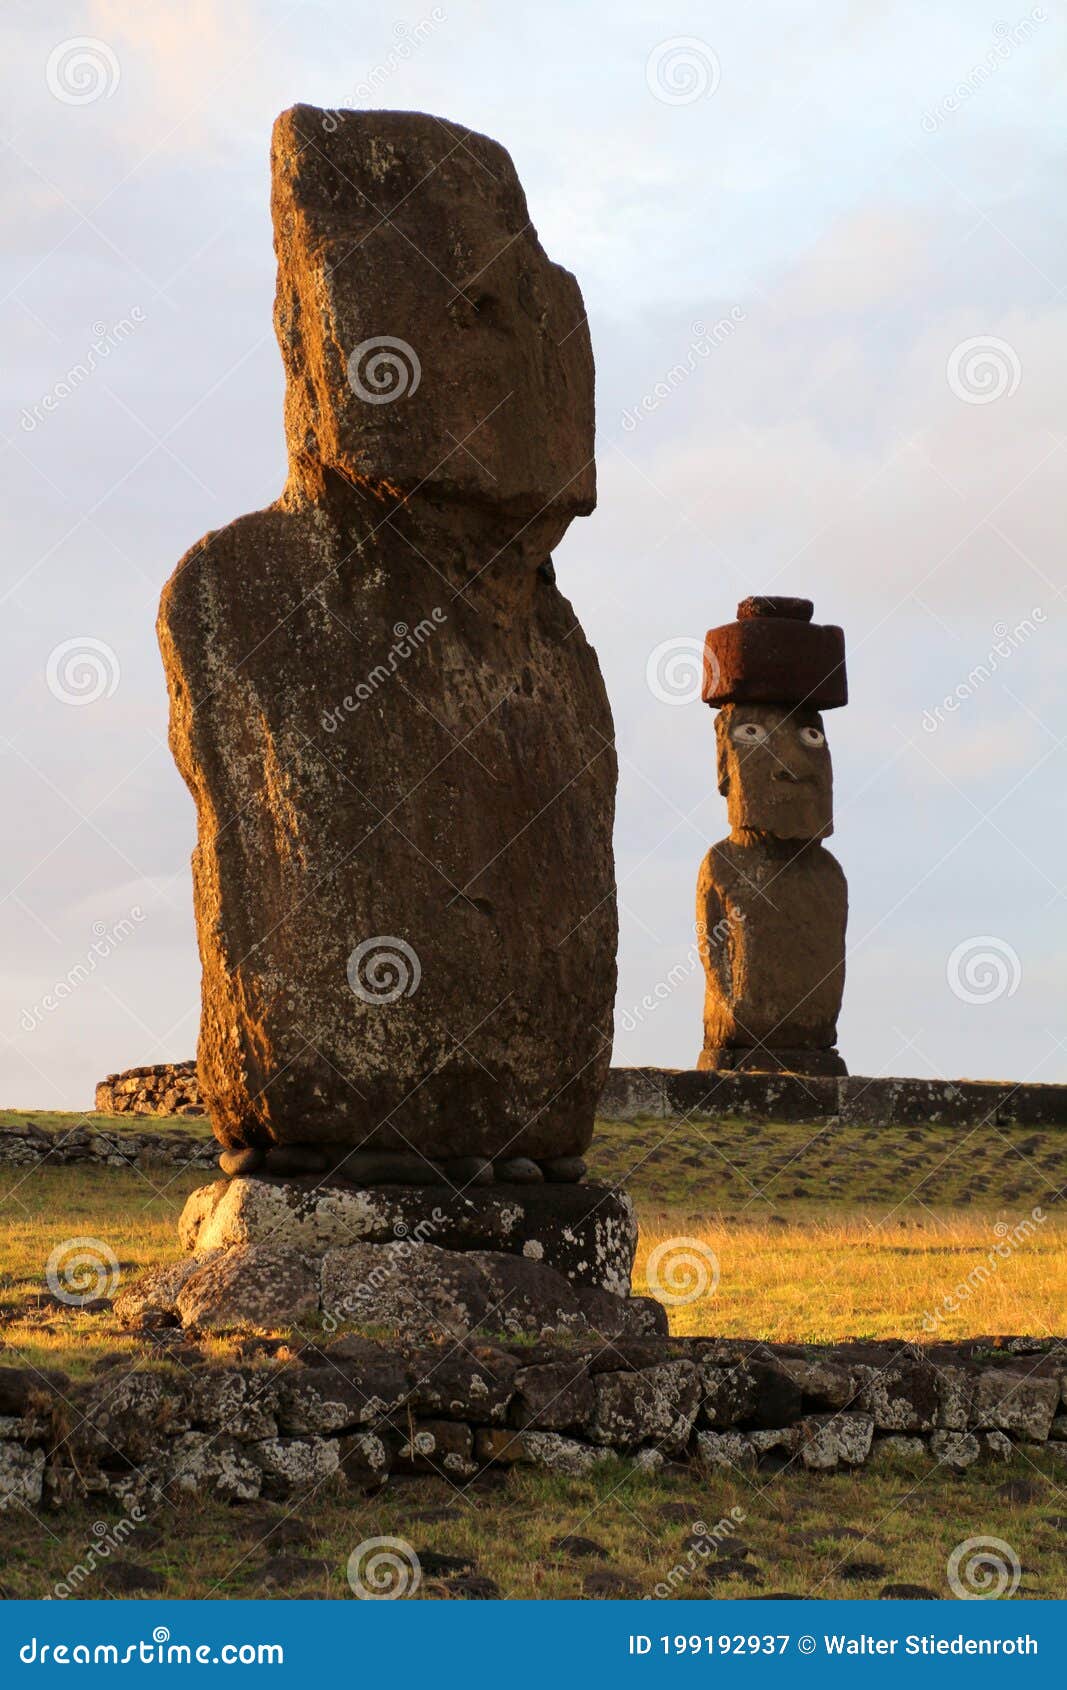 moai ahu ko te riku and moai ahu tahai on easter island